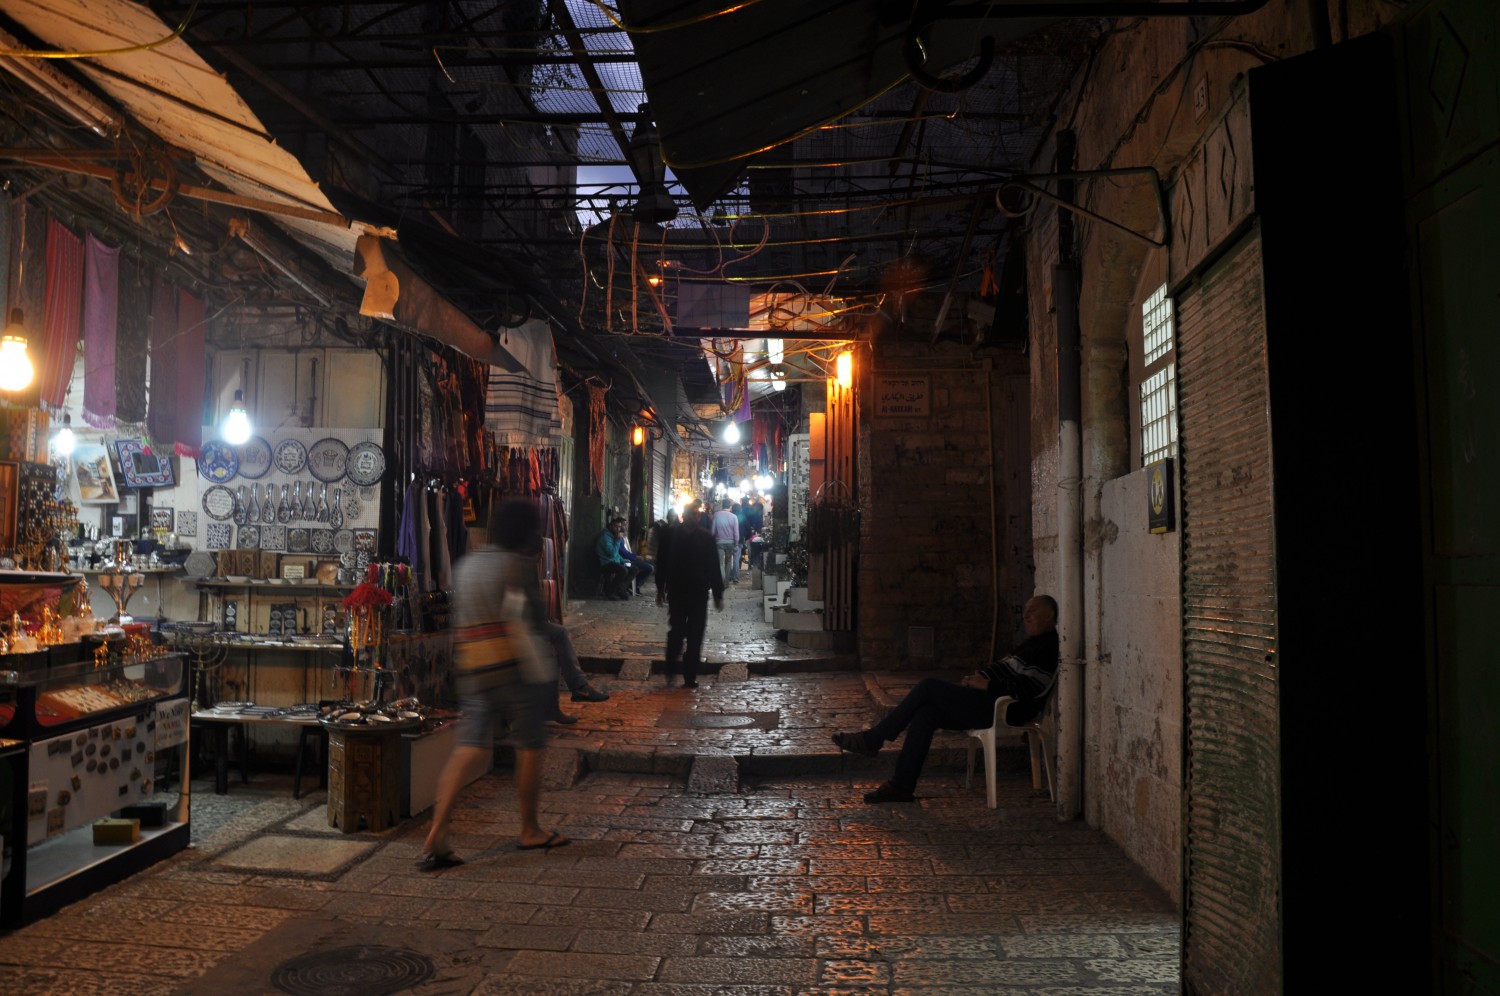 Little shops in Jerusalem